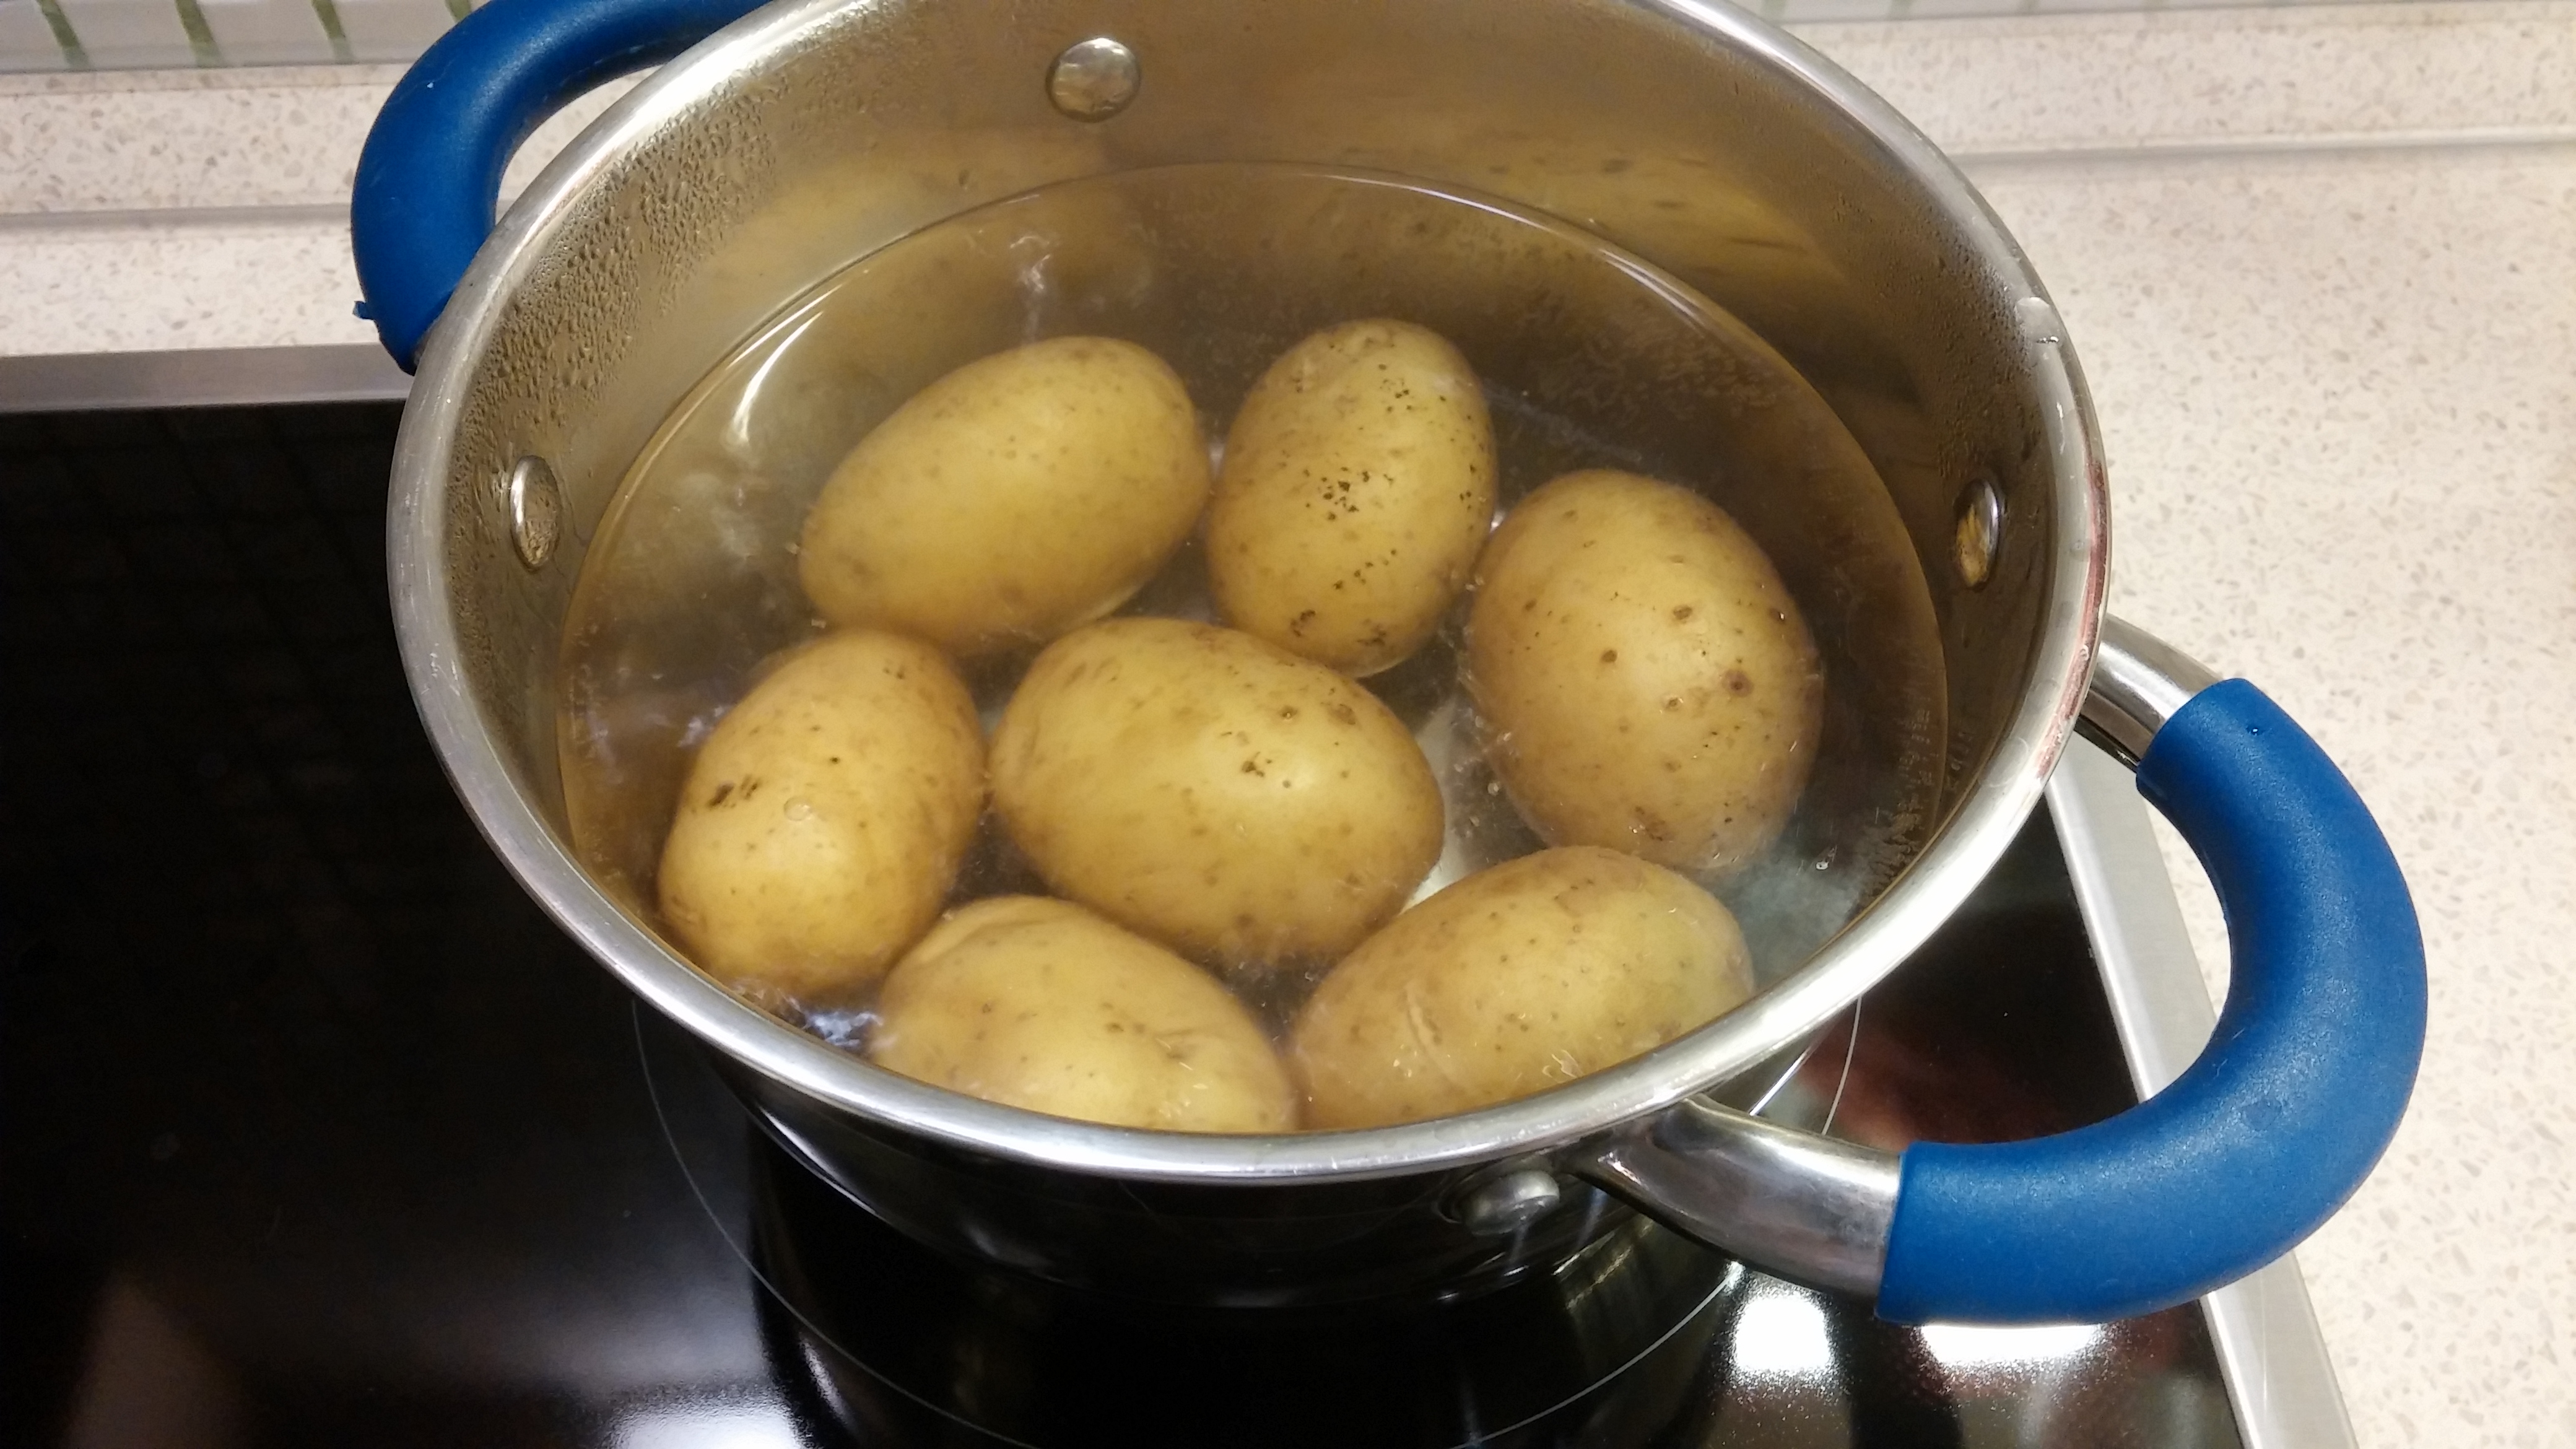 Картошку варят в кипящей. Картошка в кастрюле. Вареная картошка в кастрюле. Отваривание картофеля. Варка картофеля в кастрюле в мундире.